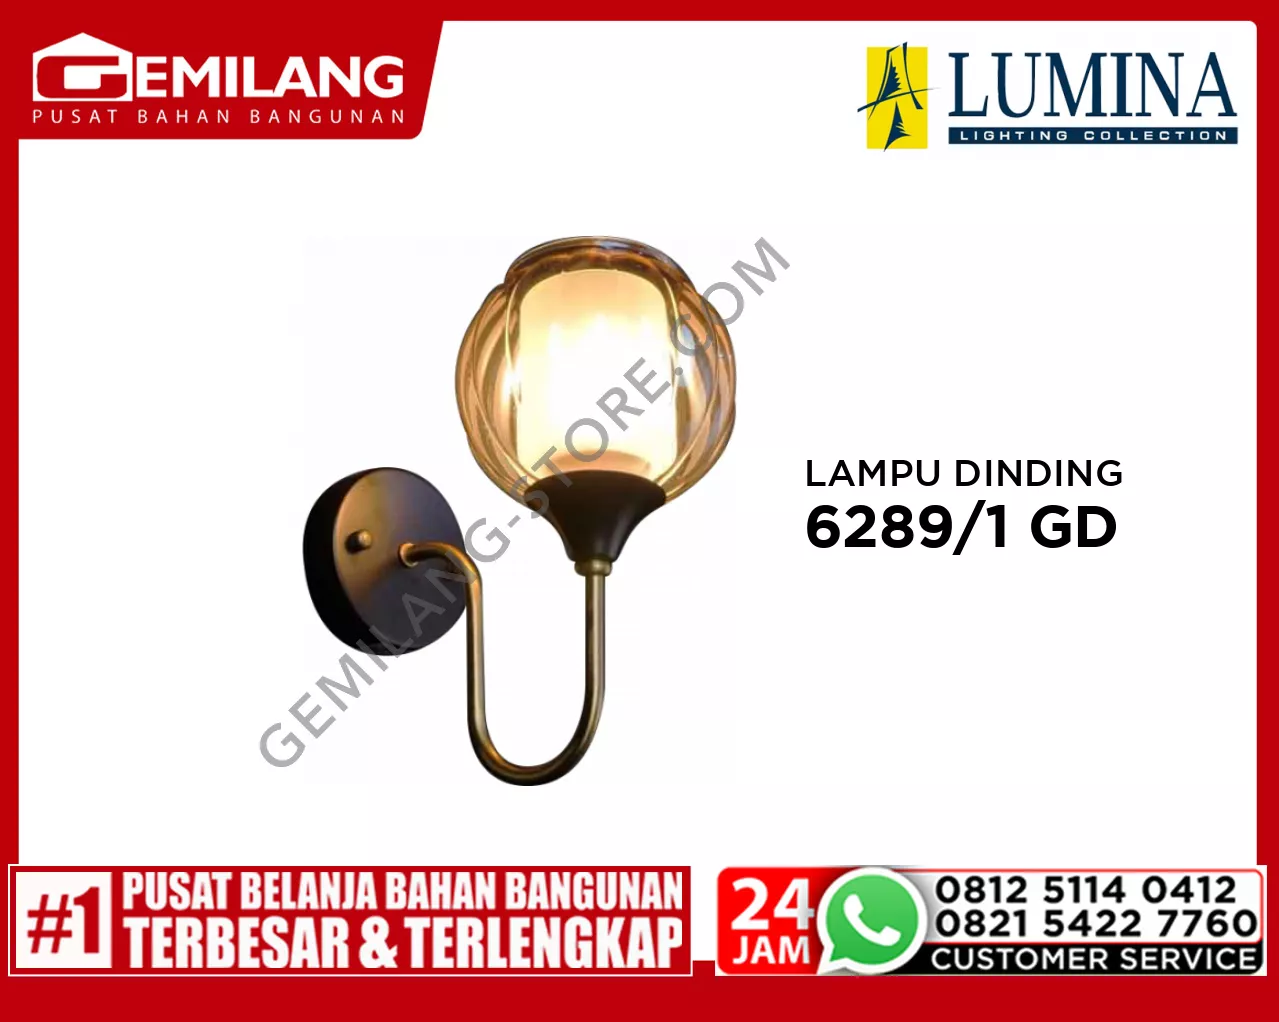 LAMPU DINDING 6289/1 GD